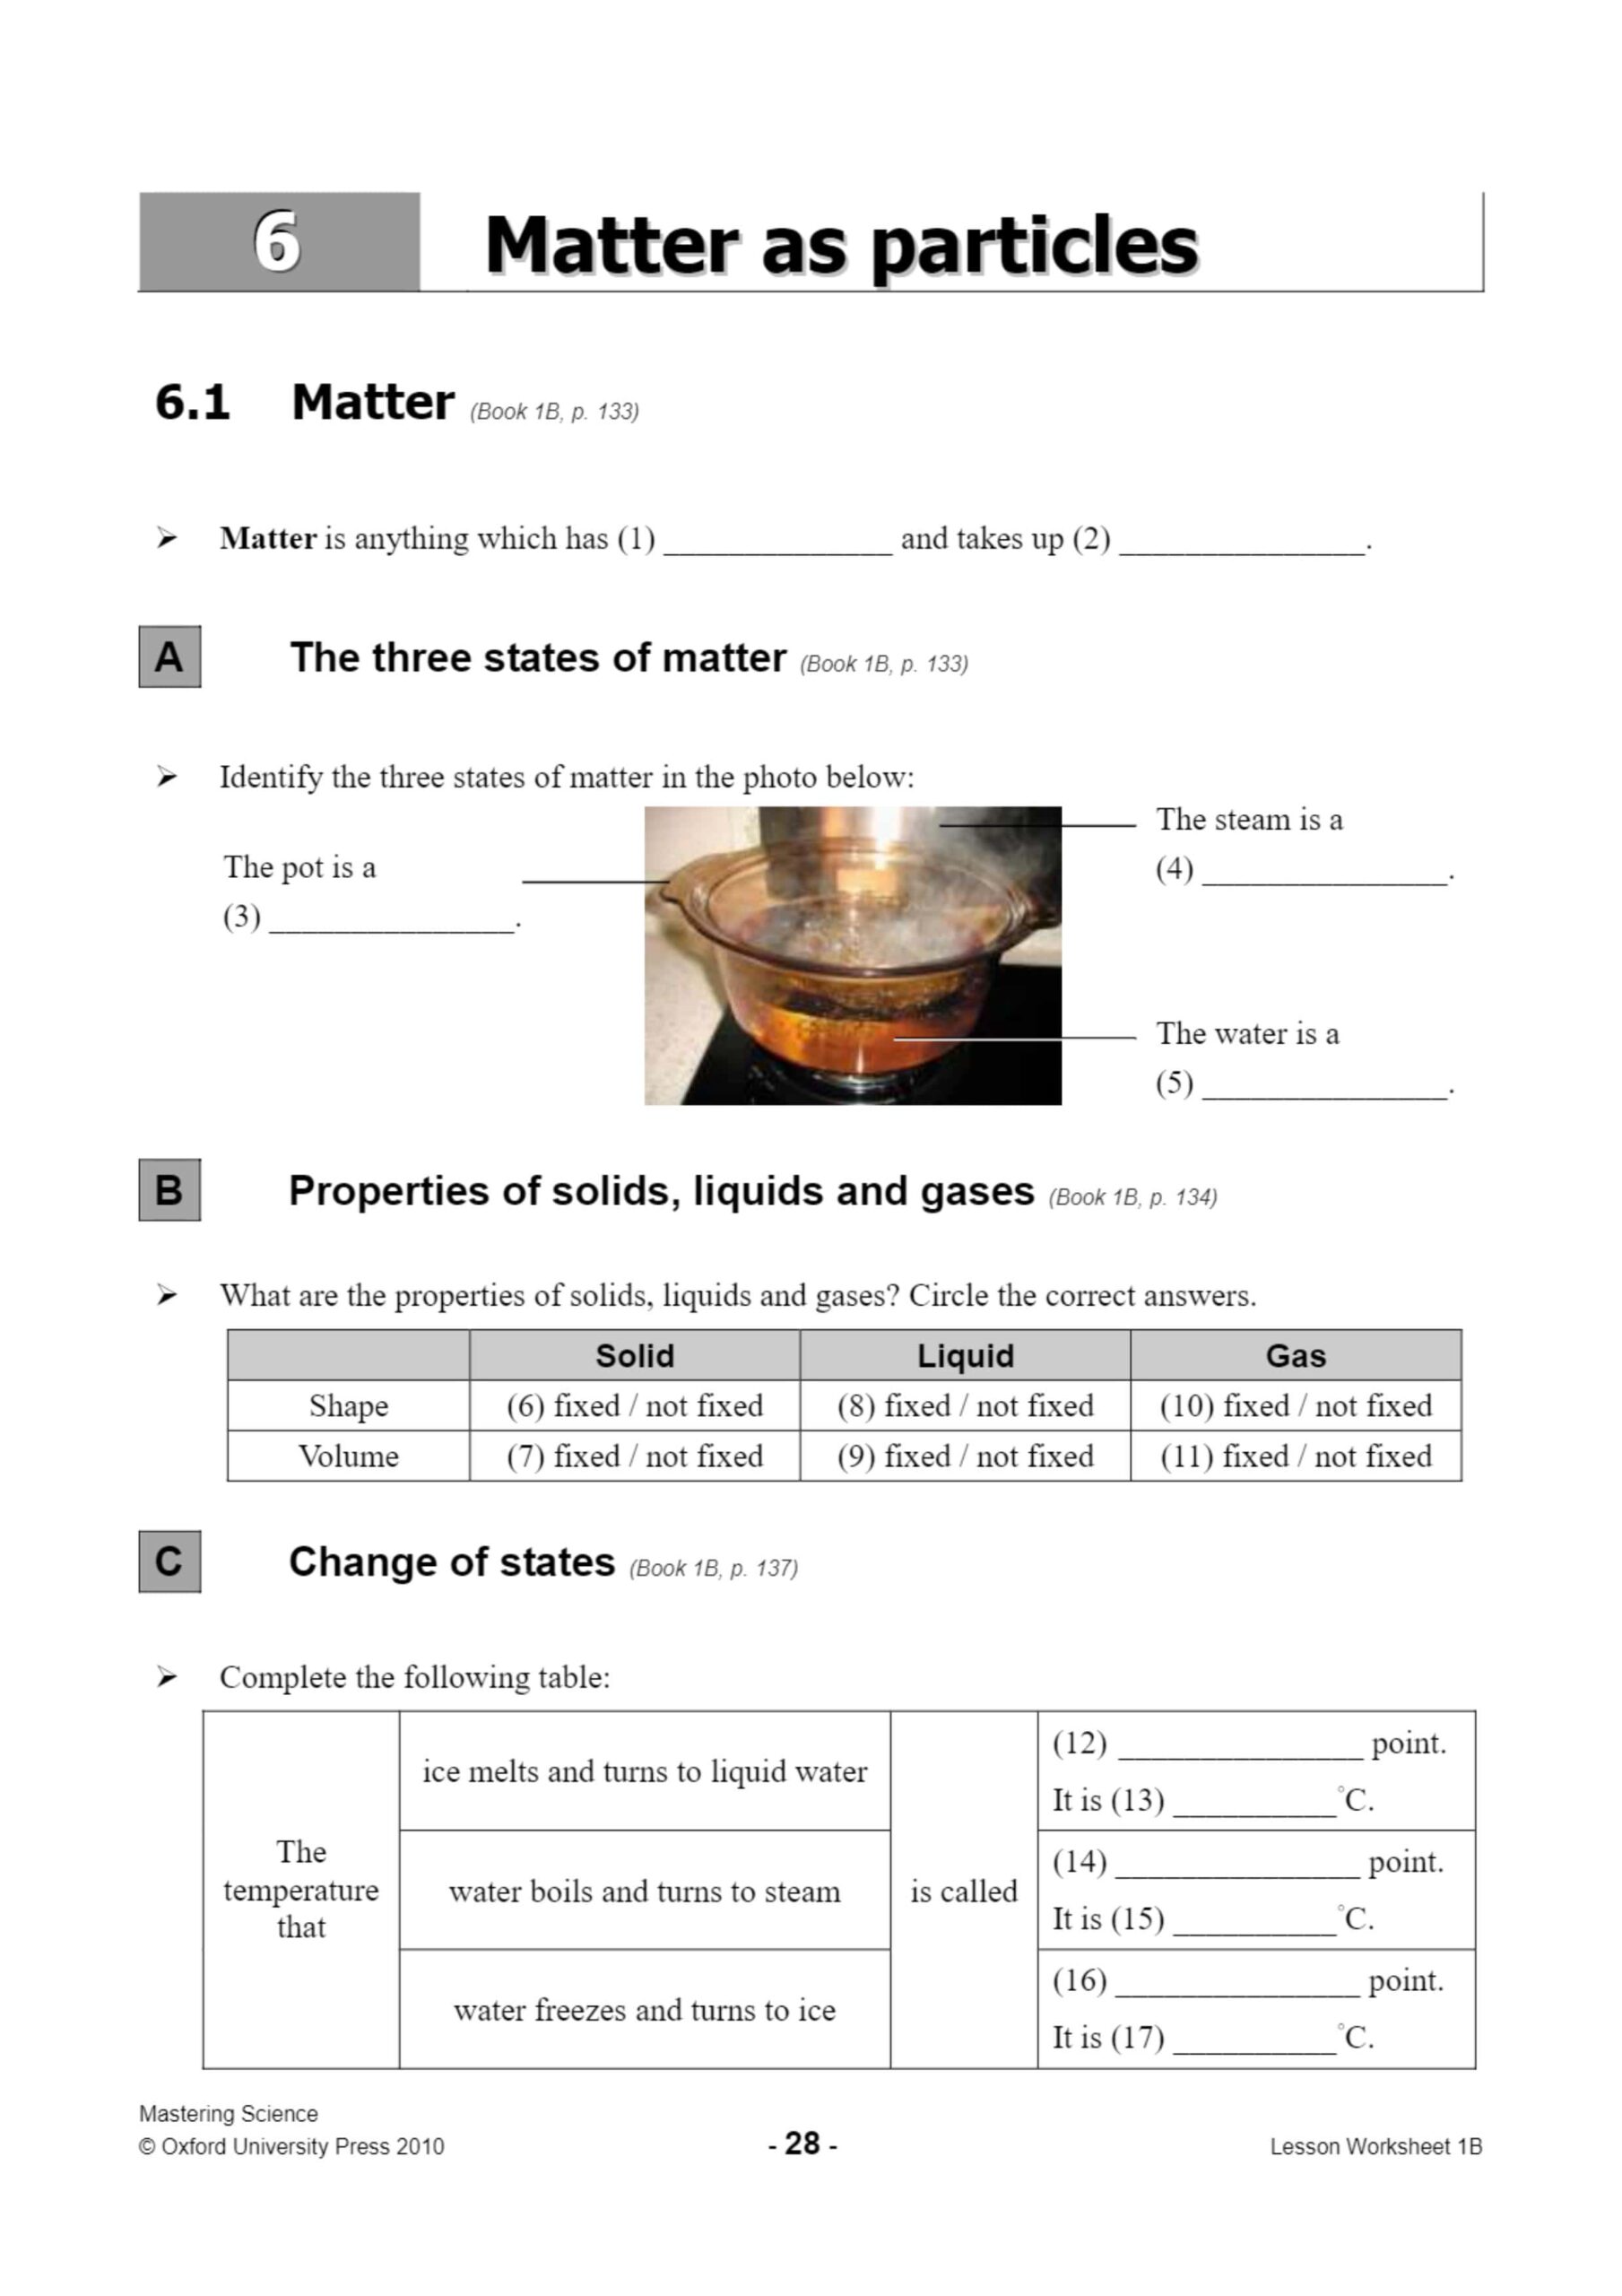 حل أوراق عمل Matter as Particles العلوم المتكاملة الصف السادس